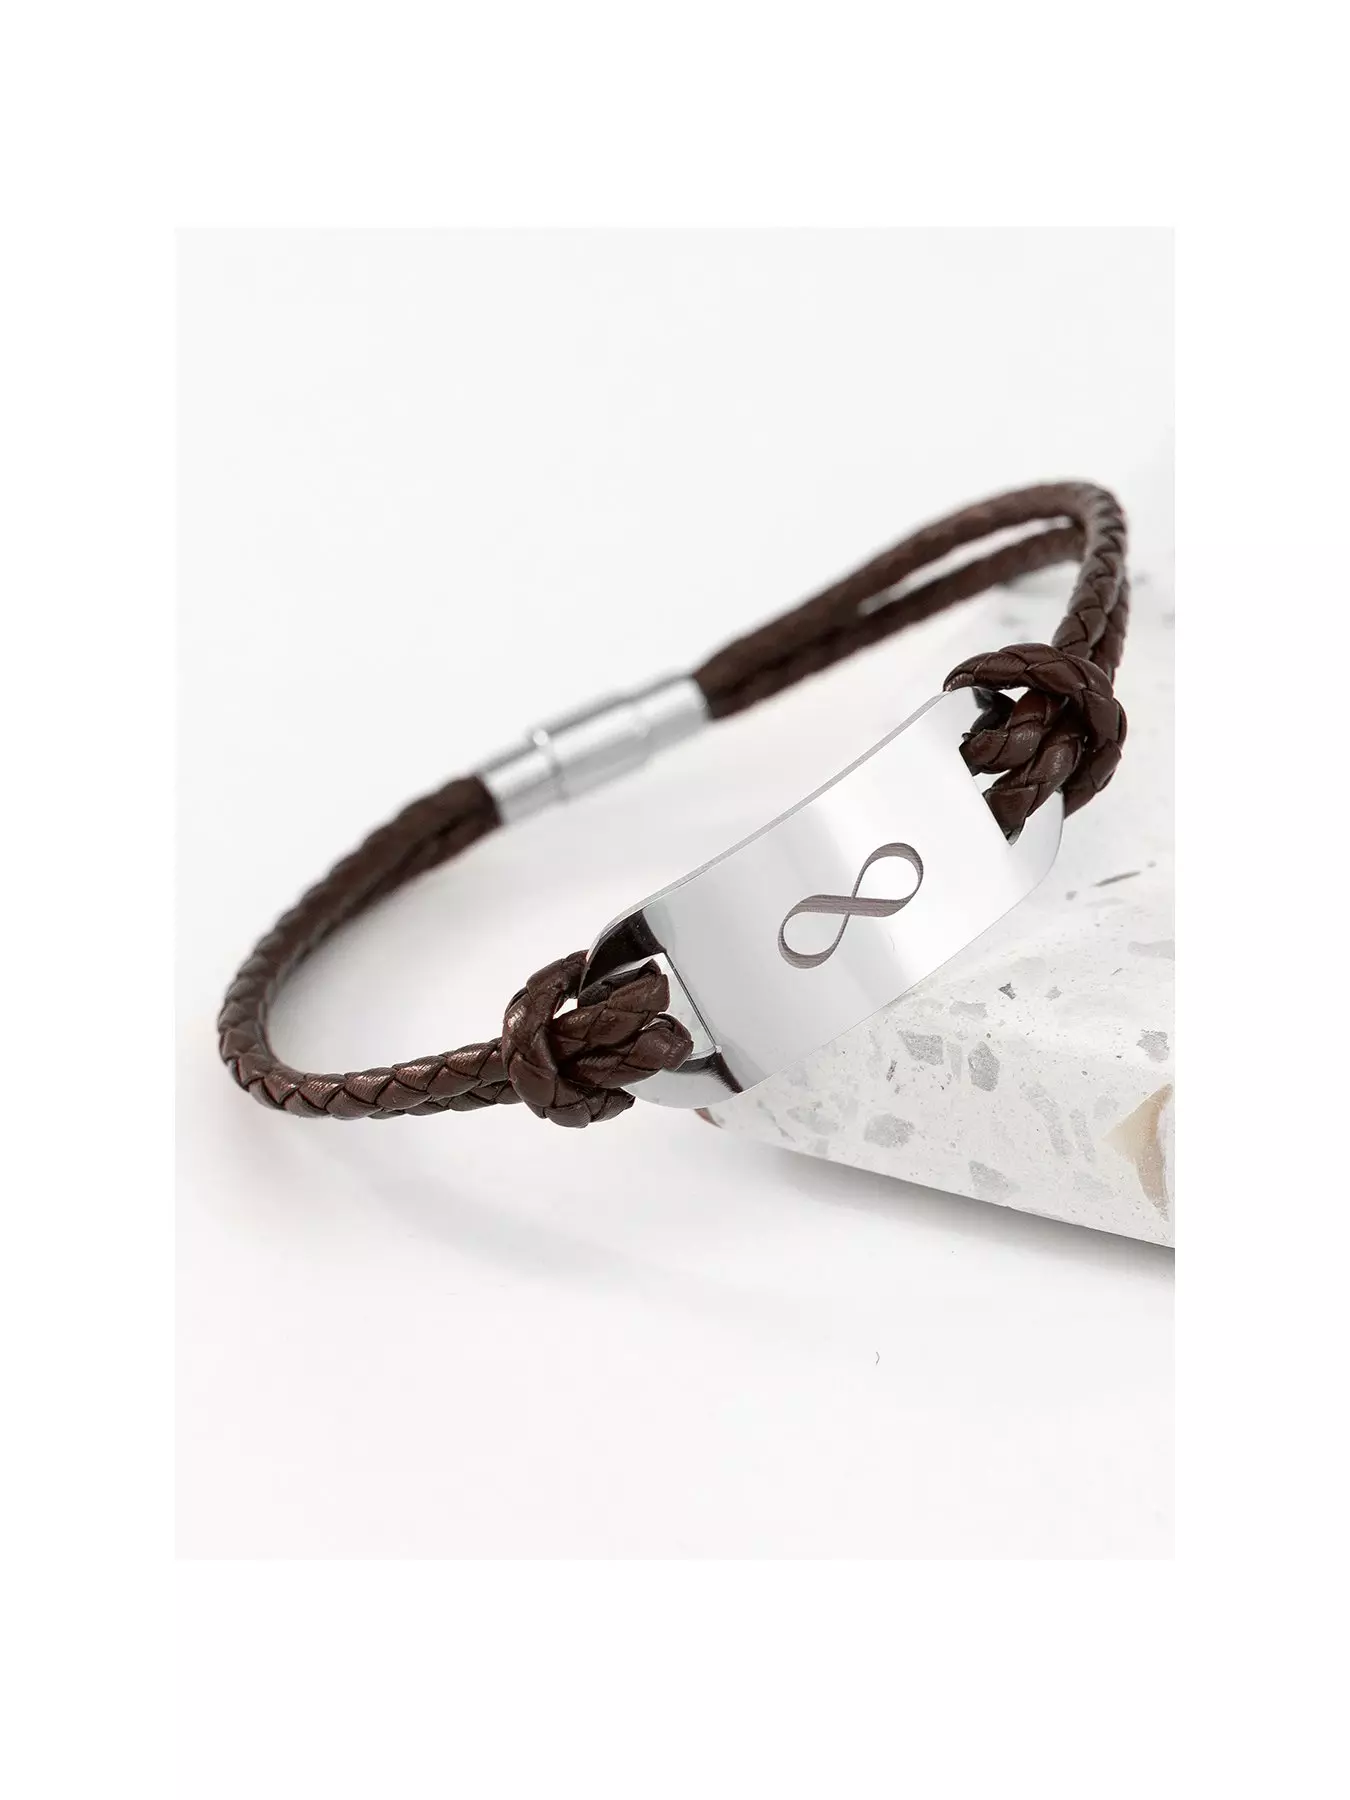 Multiway necklace - bracelet - leash - 3 black leather straps + Chain